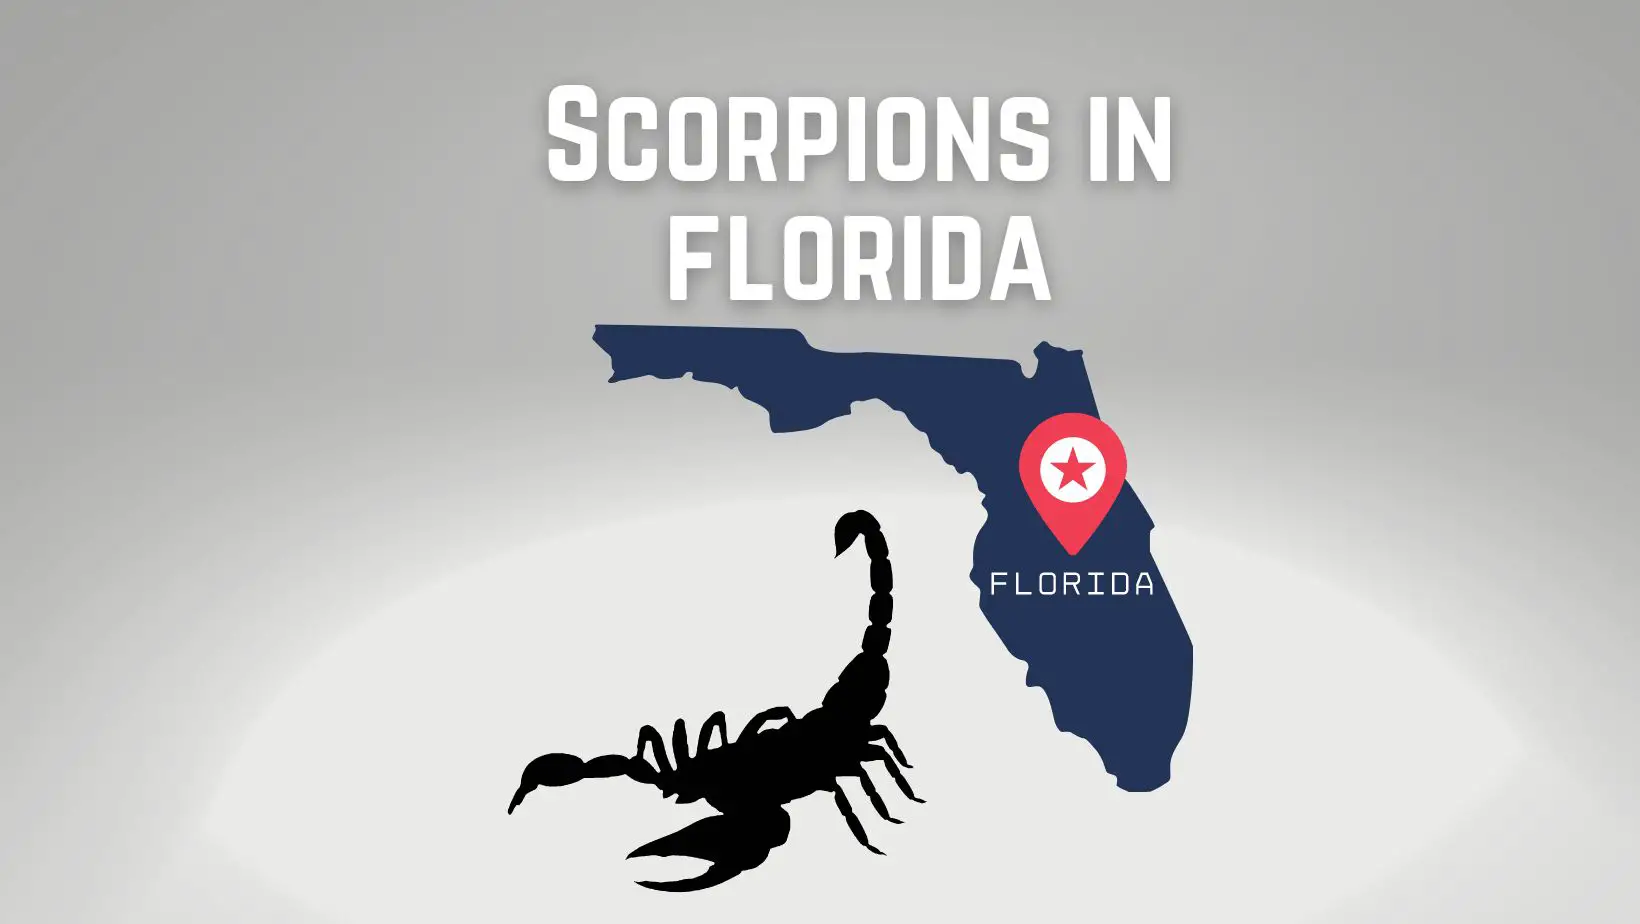 Scorpions in Florida